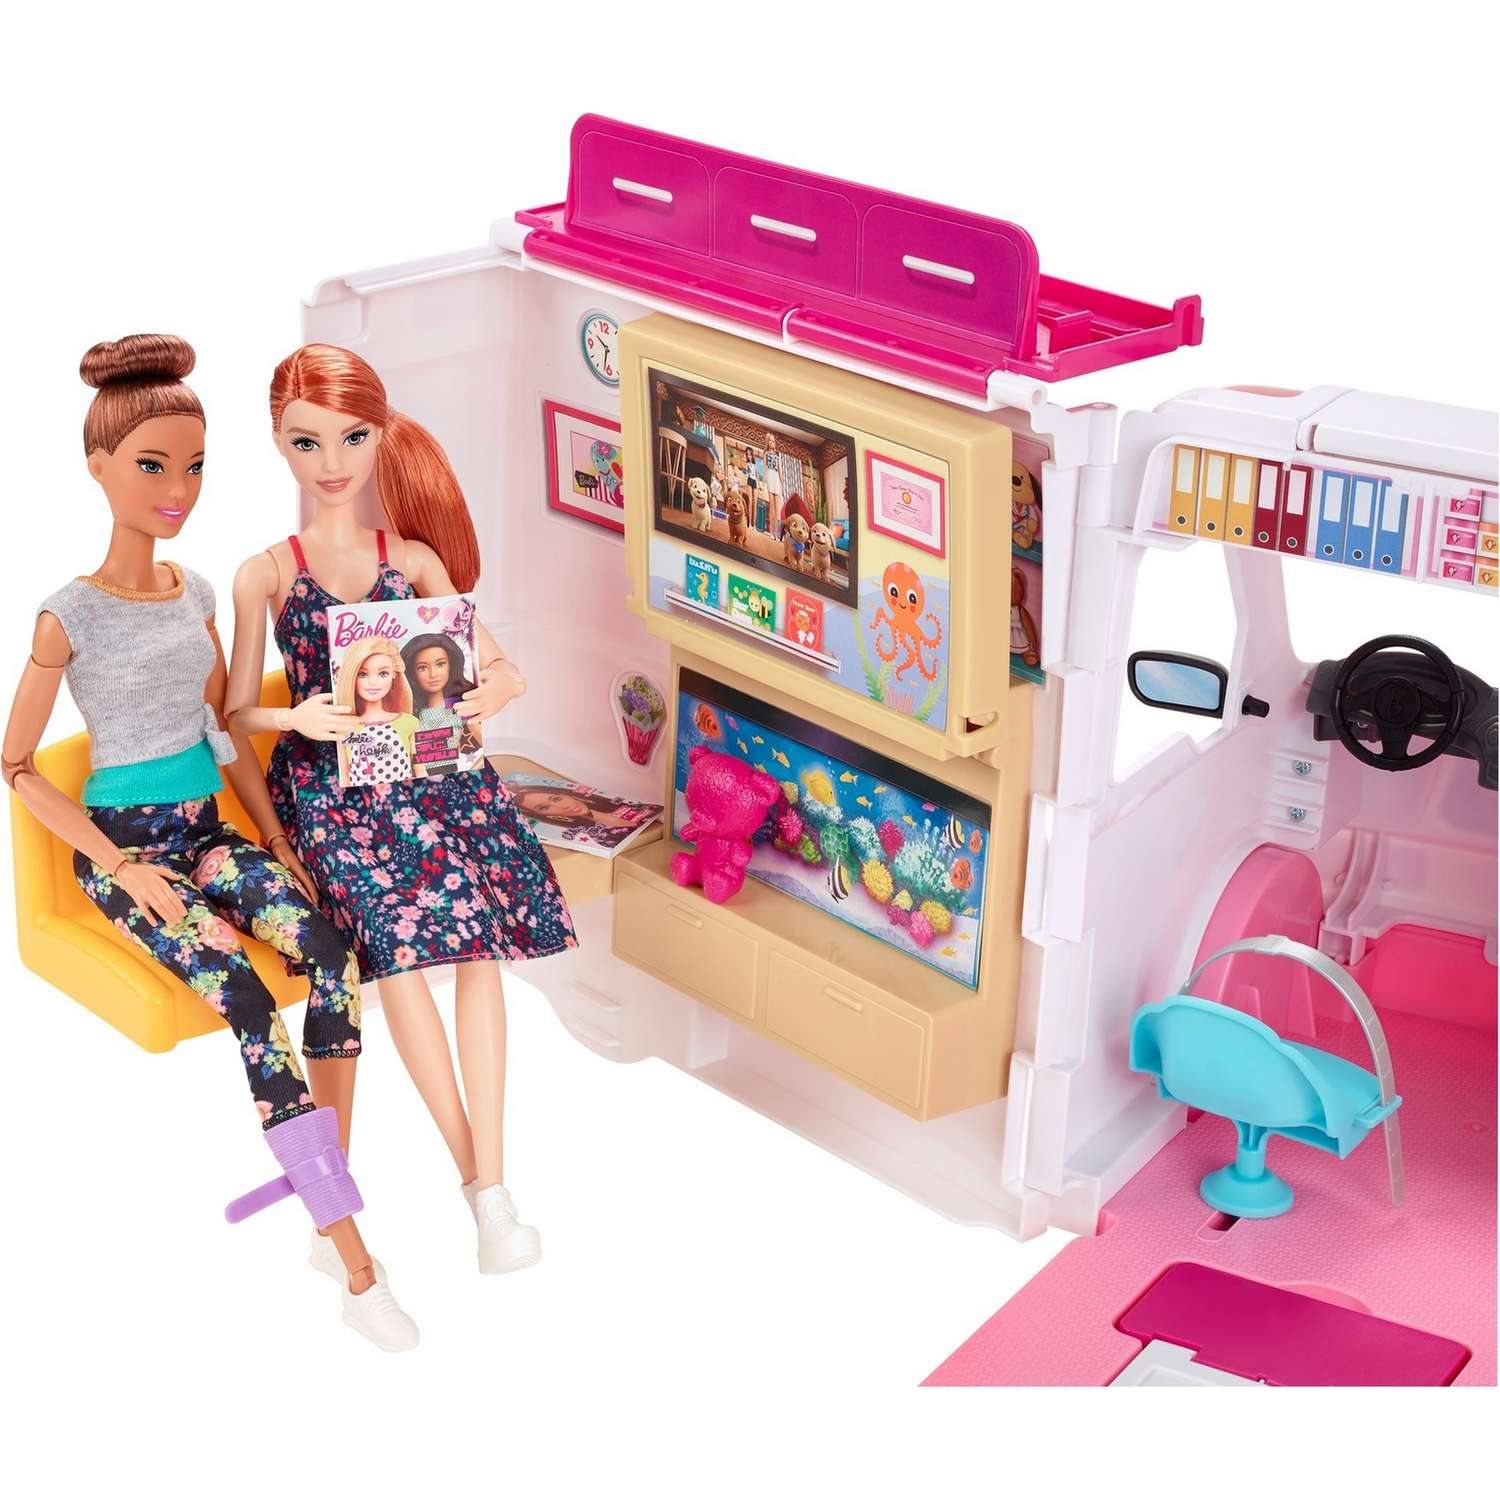 Набор игровой Barbie Кем быть? Клиника 2 куклы+машина скорой помощи GMG35 GMG35 - фото 6